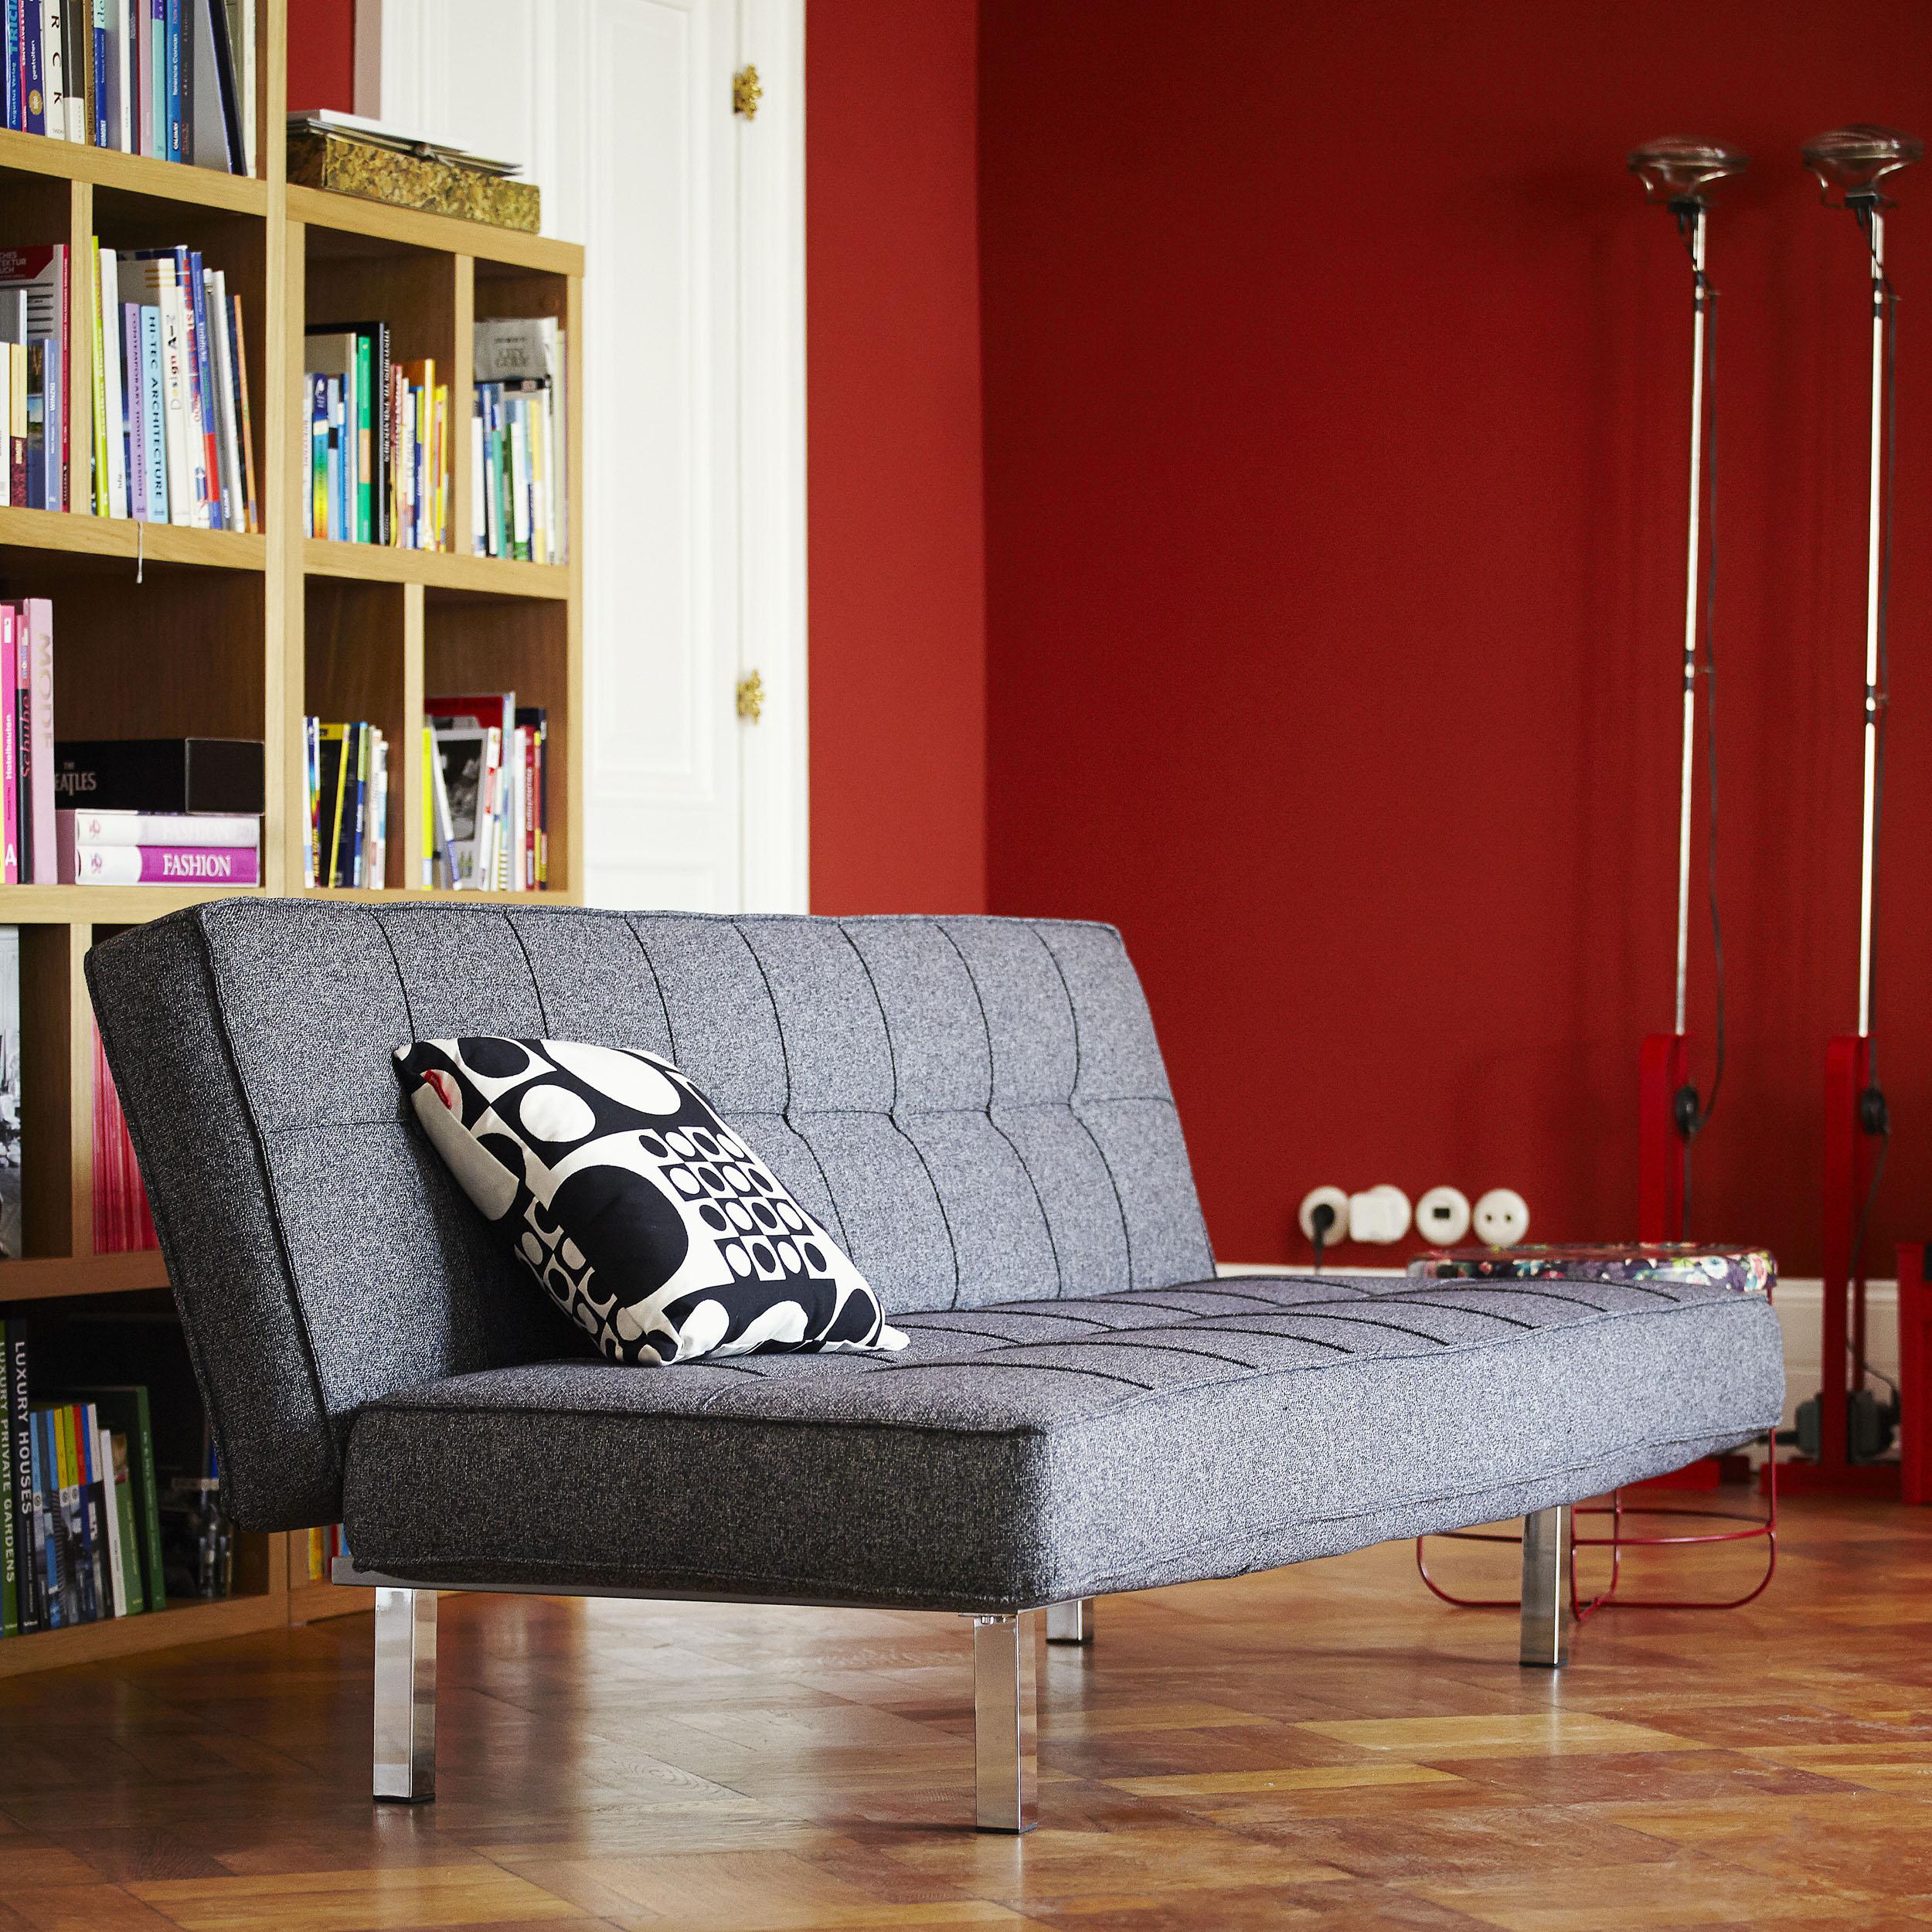 Flexibel und filigran - Tarm Bettsofa von ikarus...design #wohnzimmer #schlafsofa #sofa #grauessofa ©ikarus...design